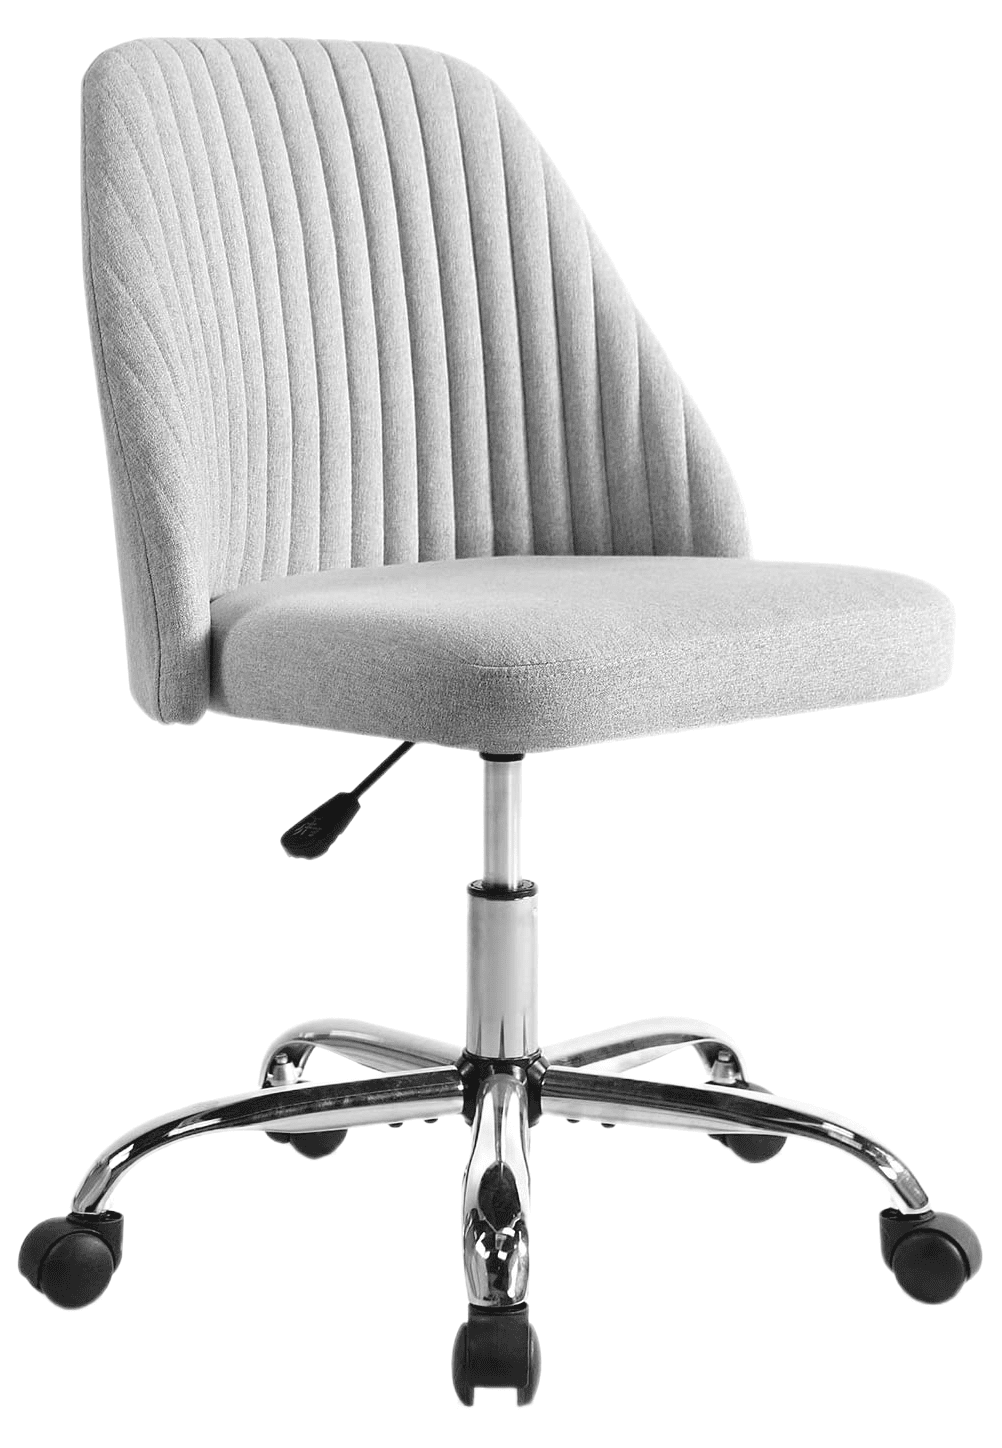 ÄLVGRÄSMAL Chair pad, gray, 13/12x13x1 - IKEA